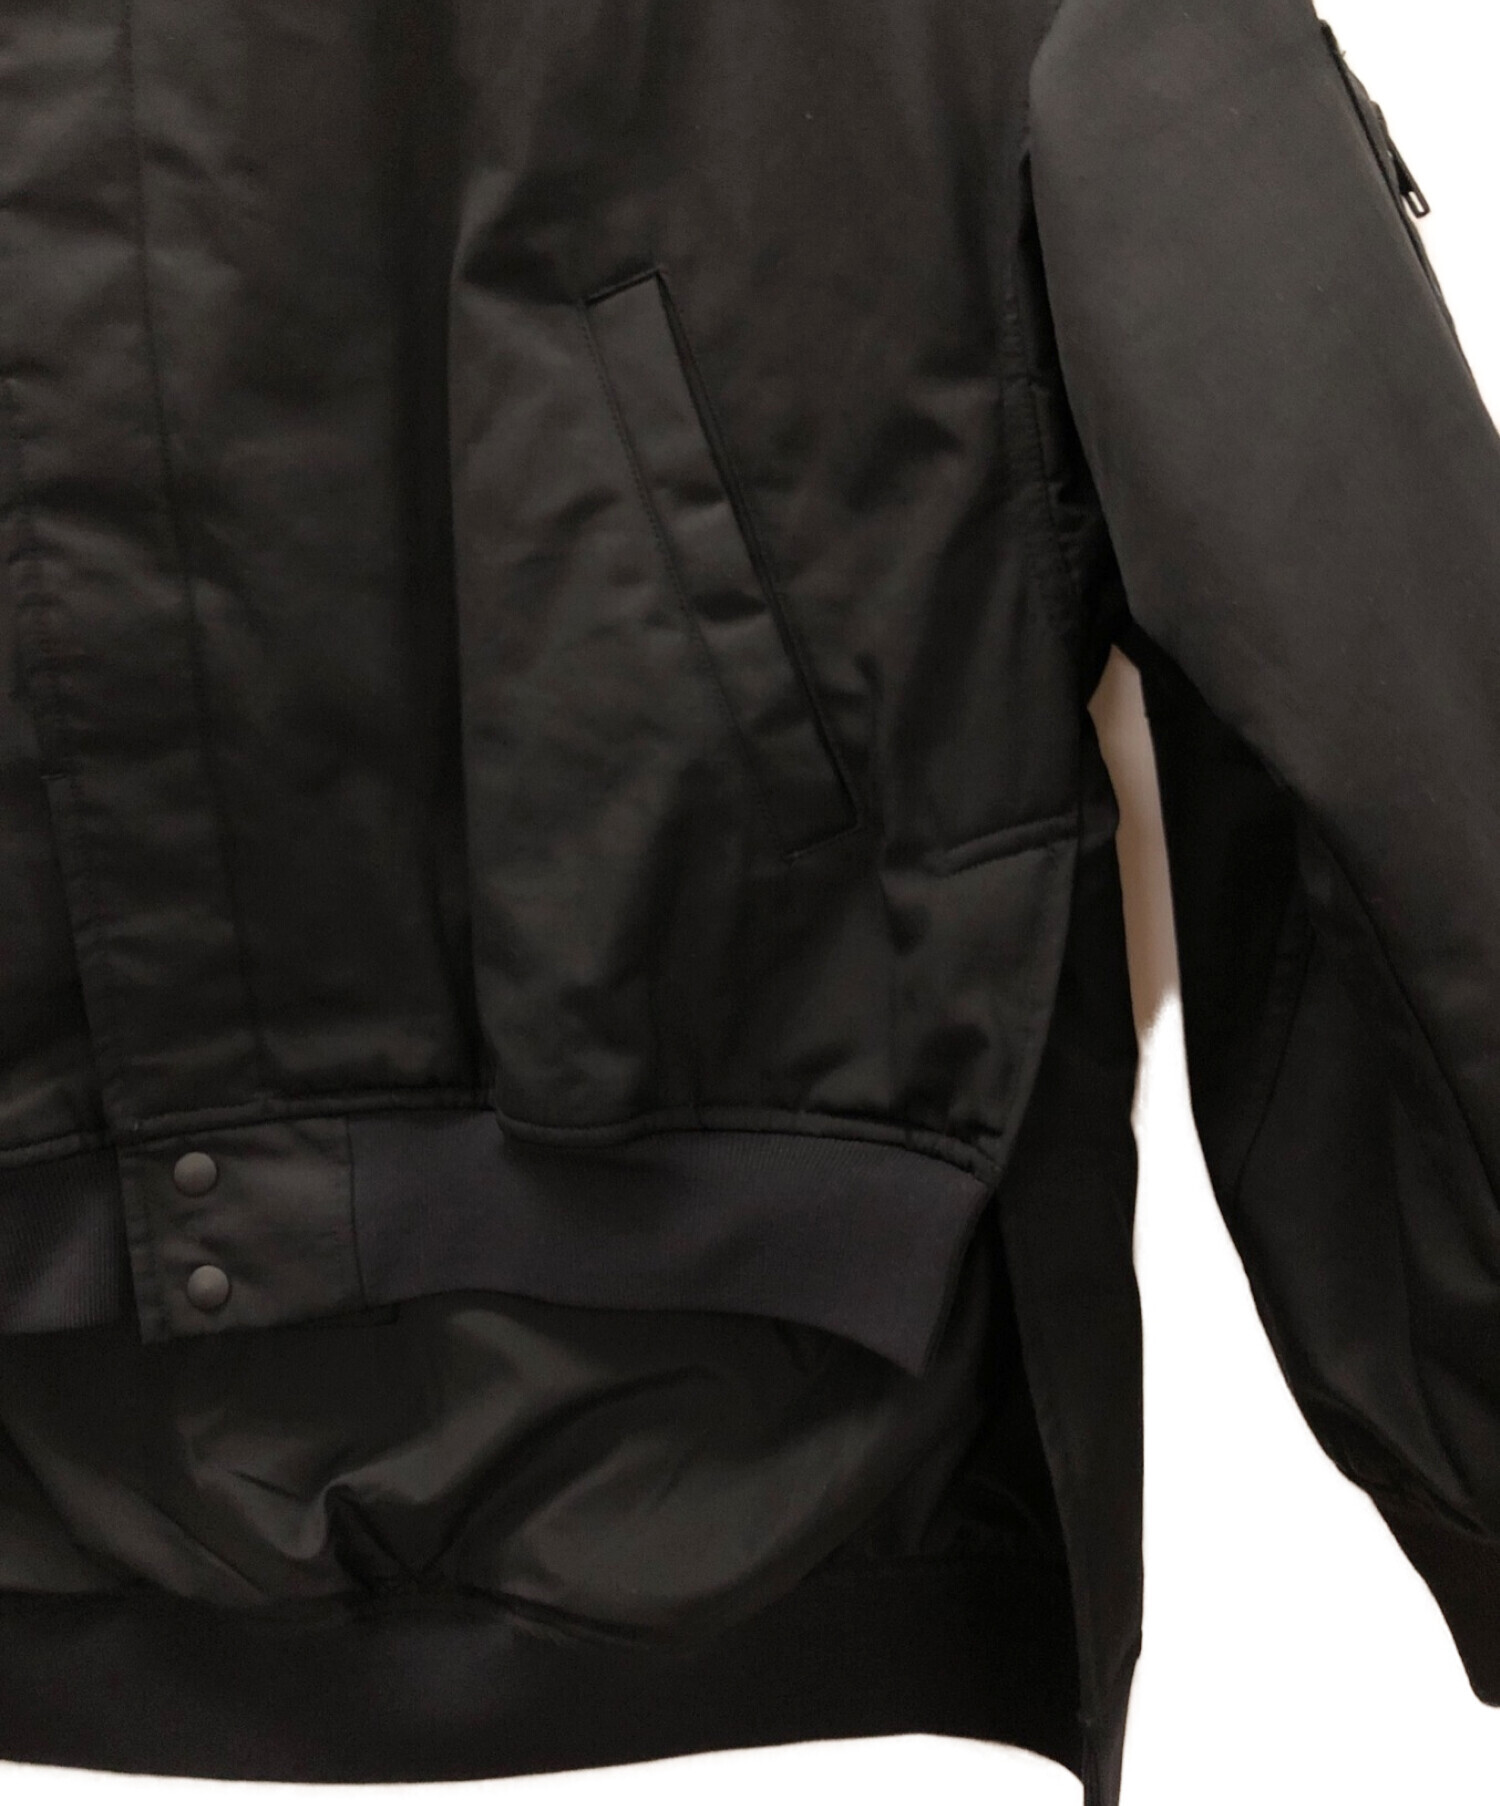 Y-3 (ワイスリー) バックロゴ ボンバージャケット ブラック サイズ:XS